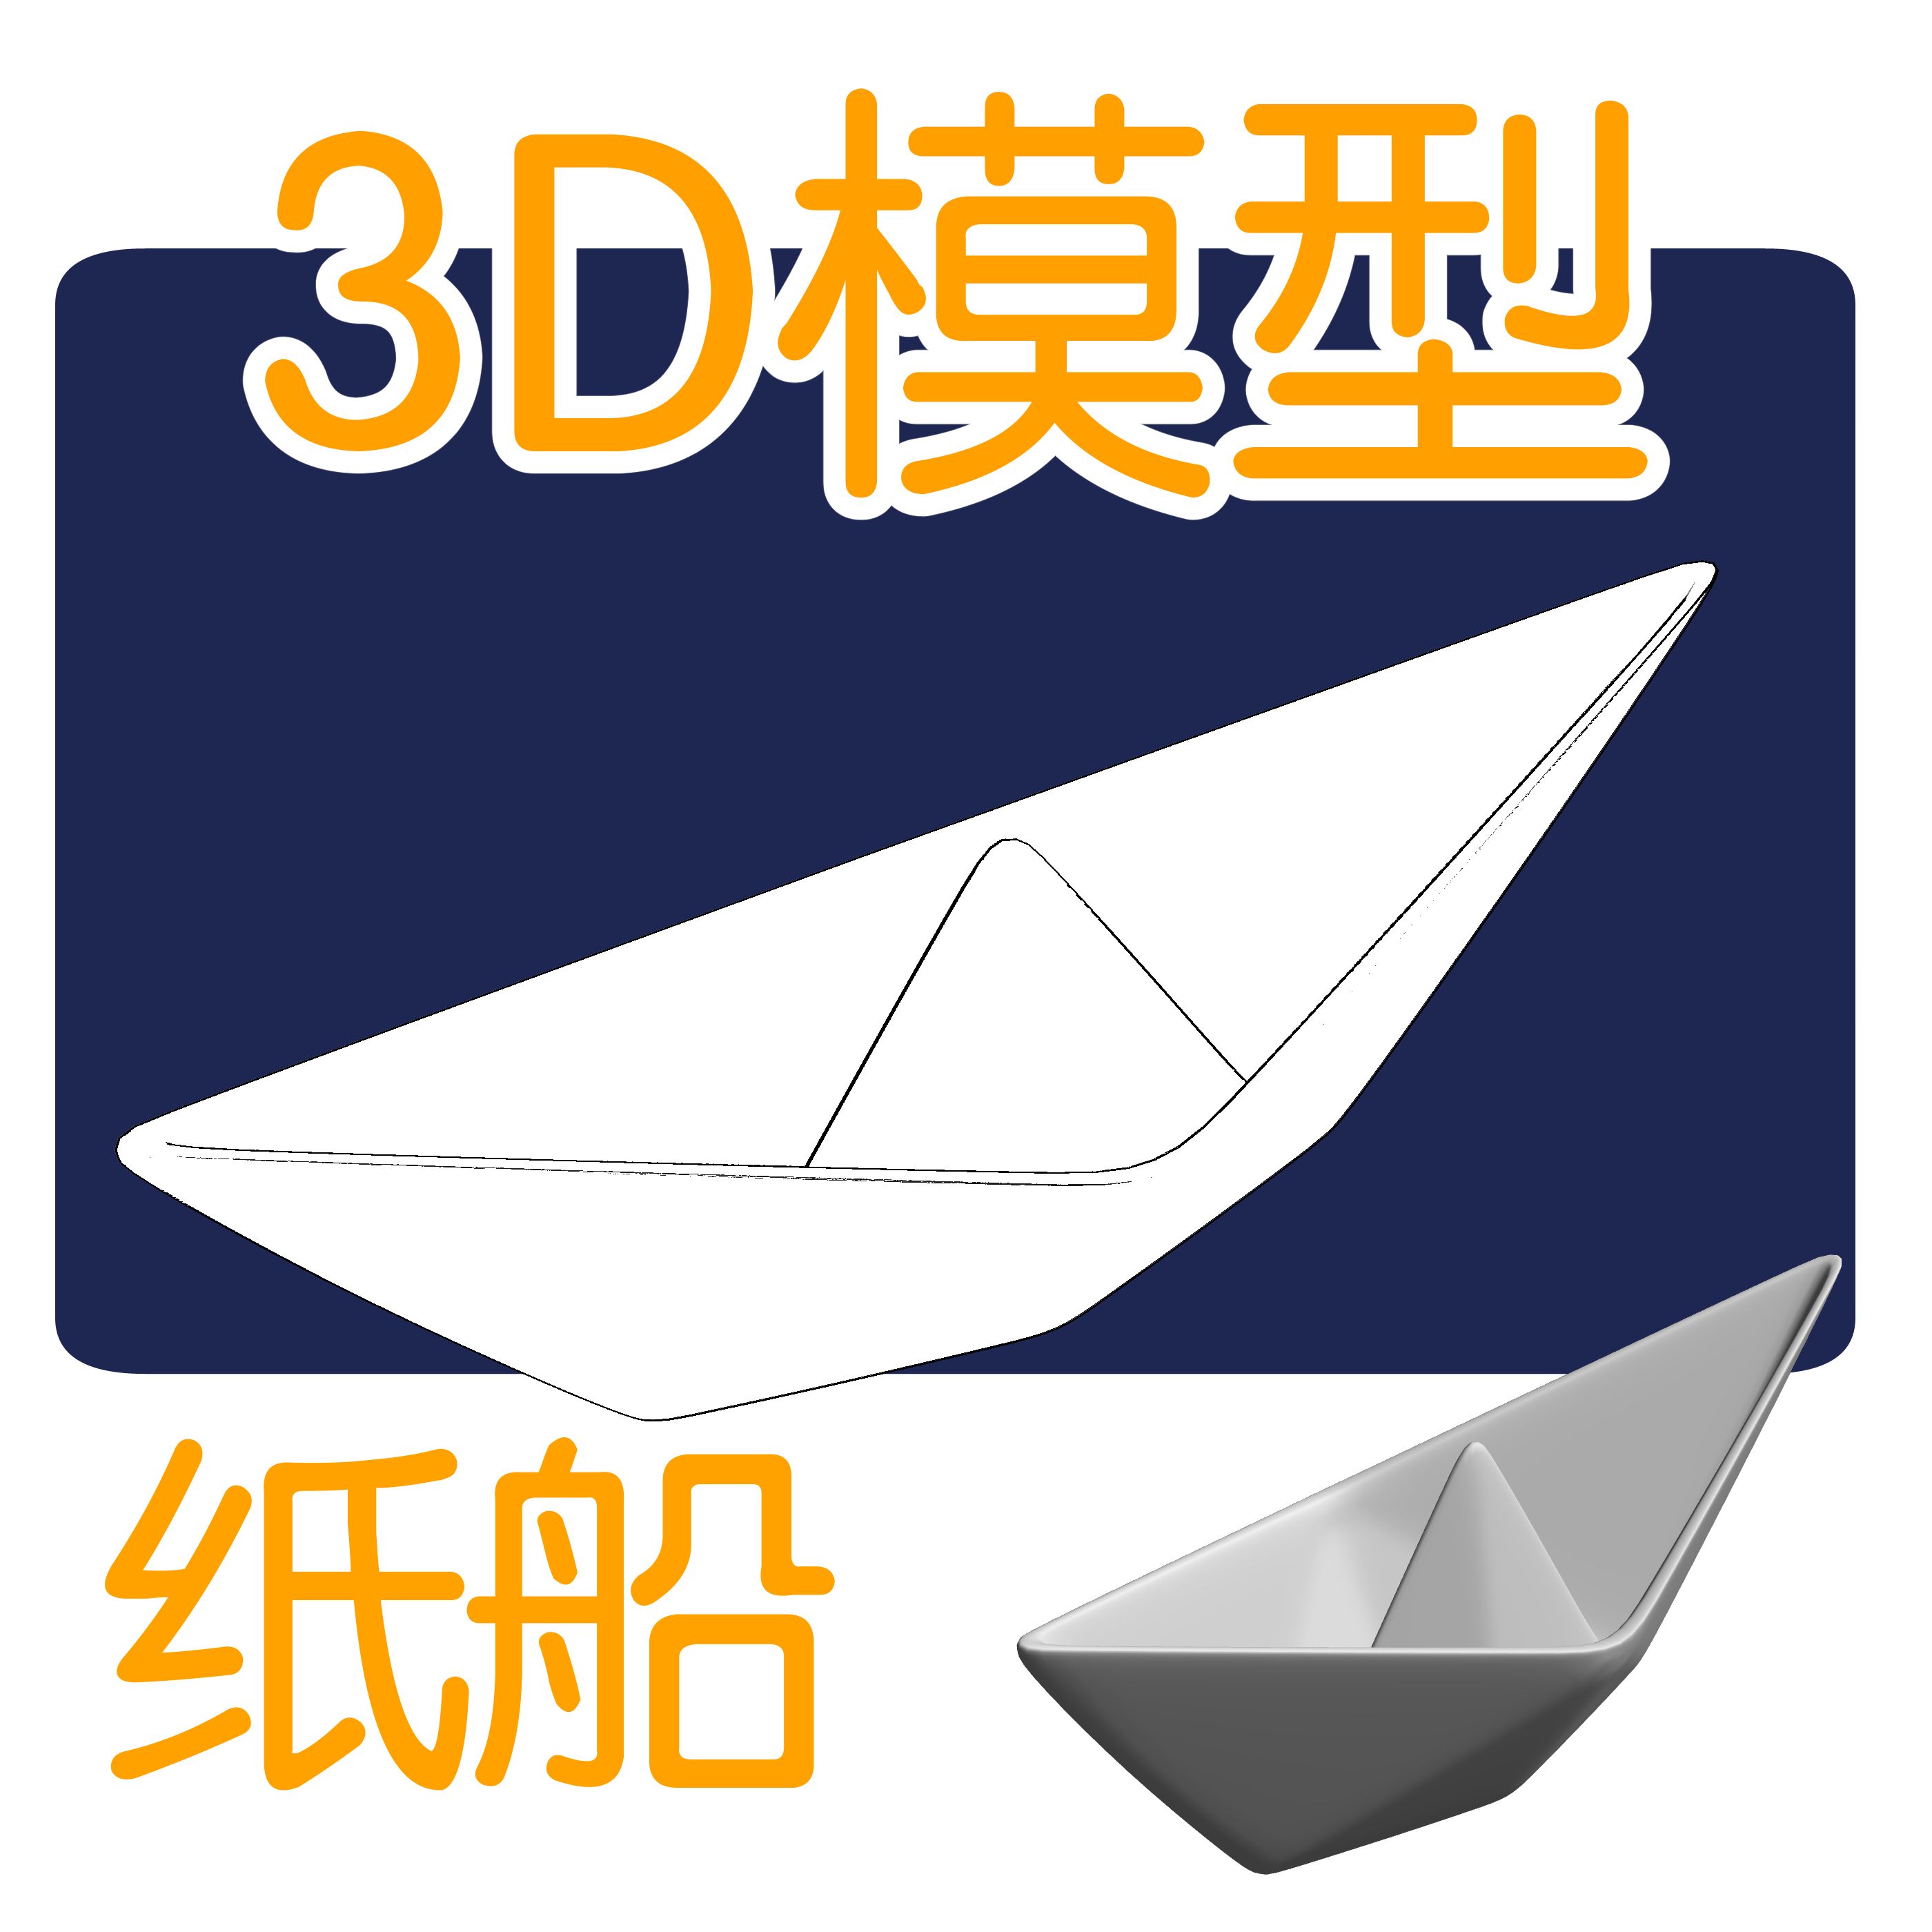 在大海的红色Origami纸船喜欢背景 库存图片. 图片 包括有 浮动, 商业, 简单, 蓝色, 领导先锋 - 56535613